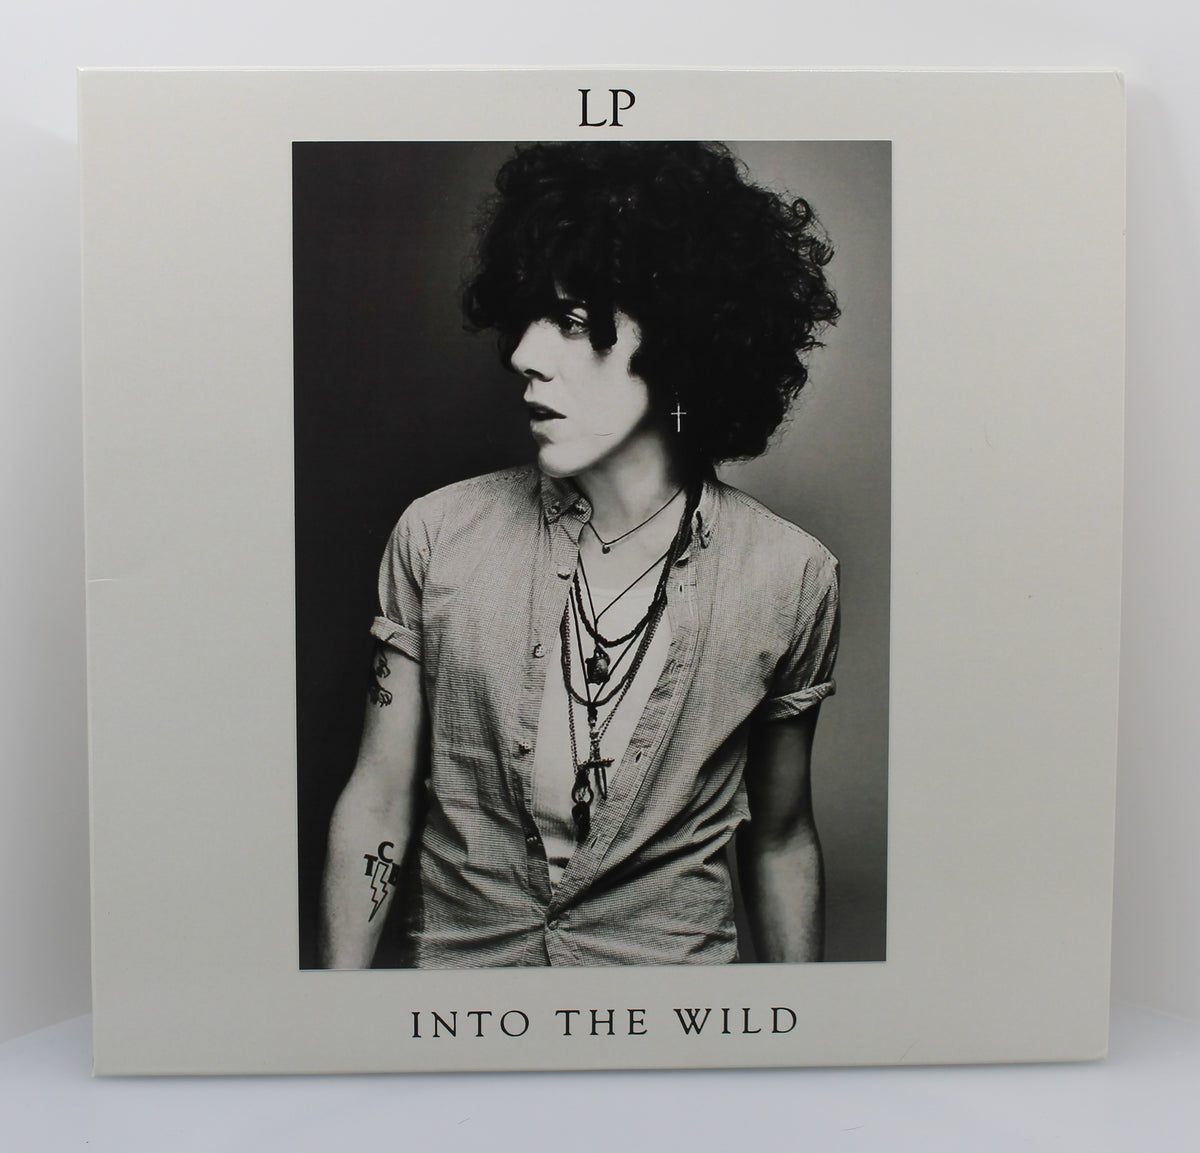 Laura Pergolizzi, L.P. – Into The Wild, Vinyl Maxi Single, 2012